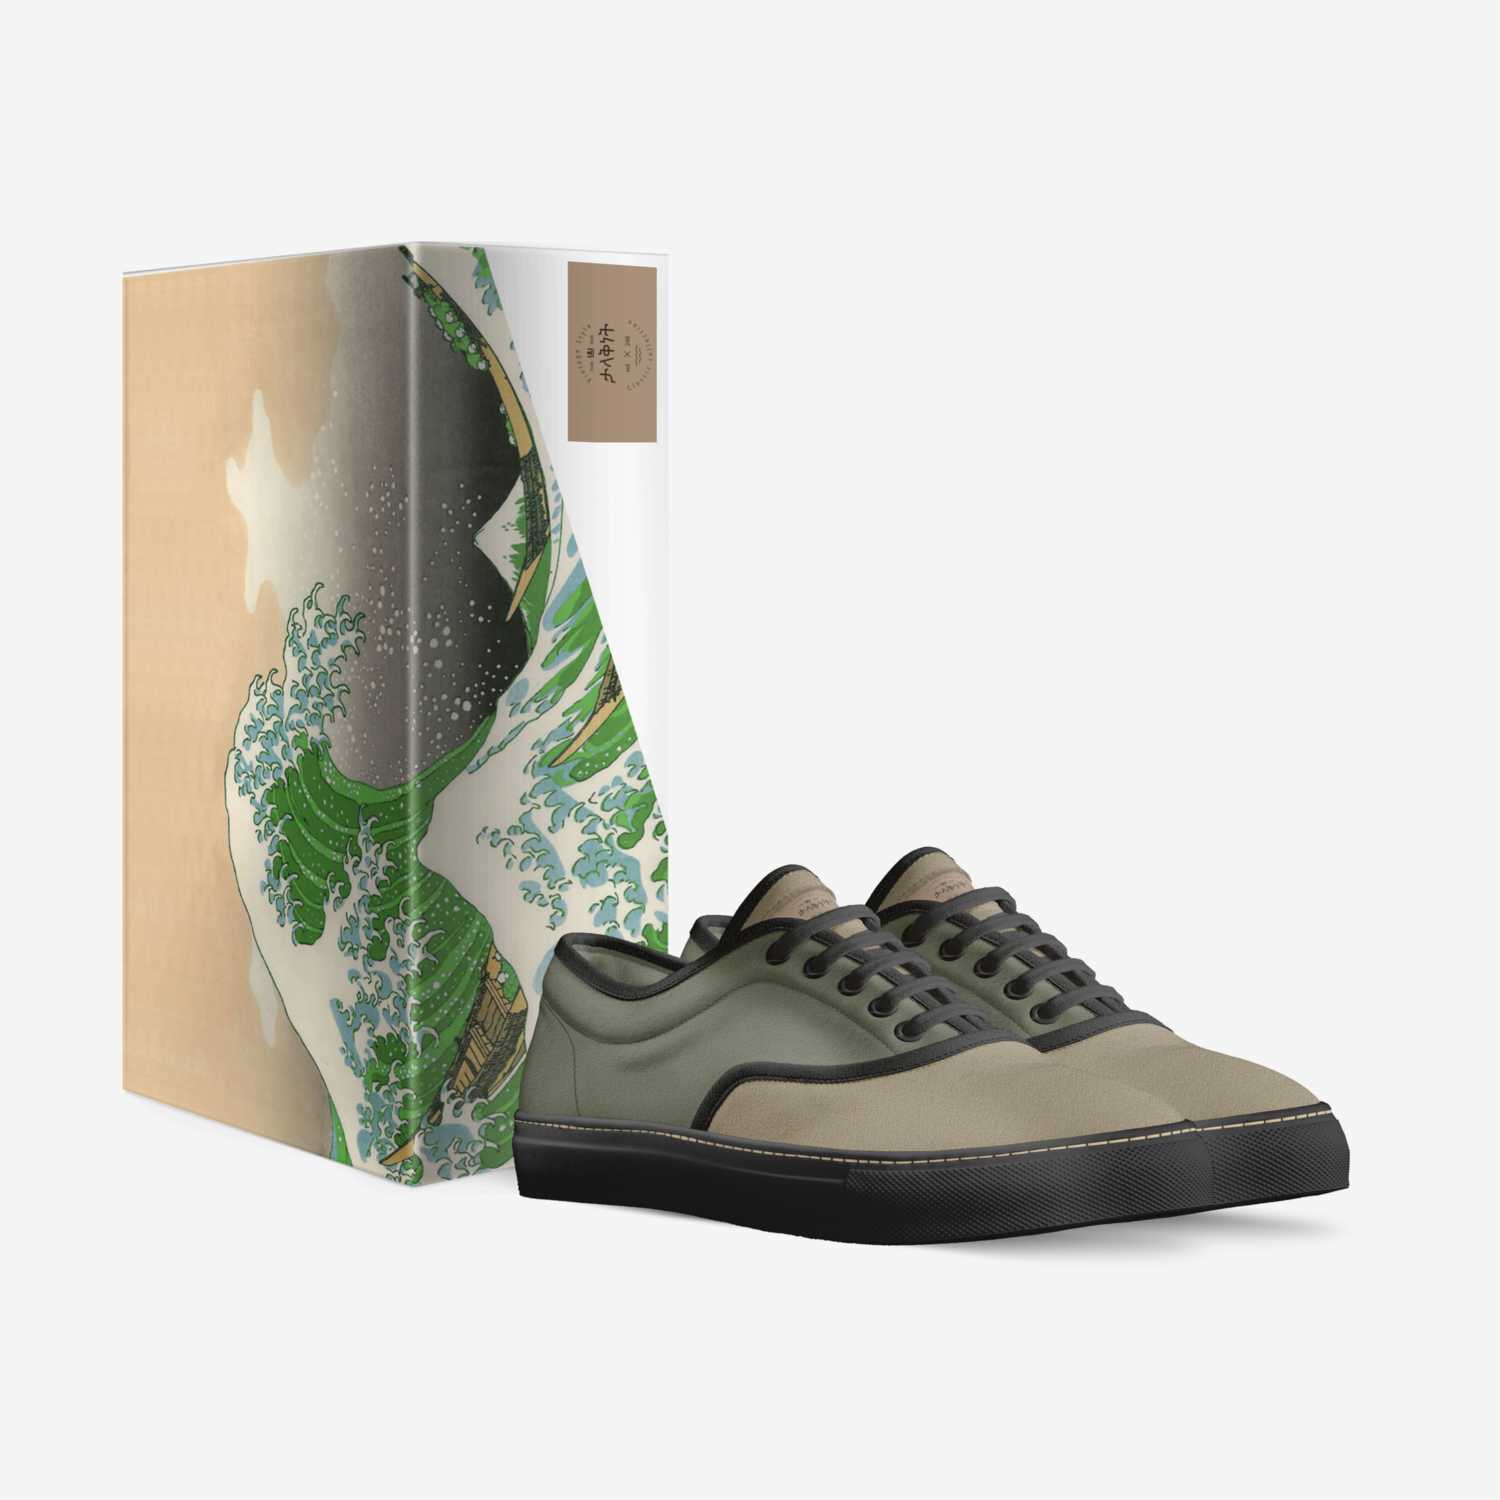 ታላቅነት custom made in Italy shoes by Frankie Free | Box view